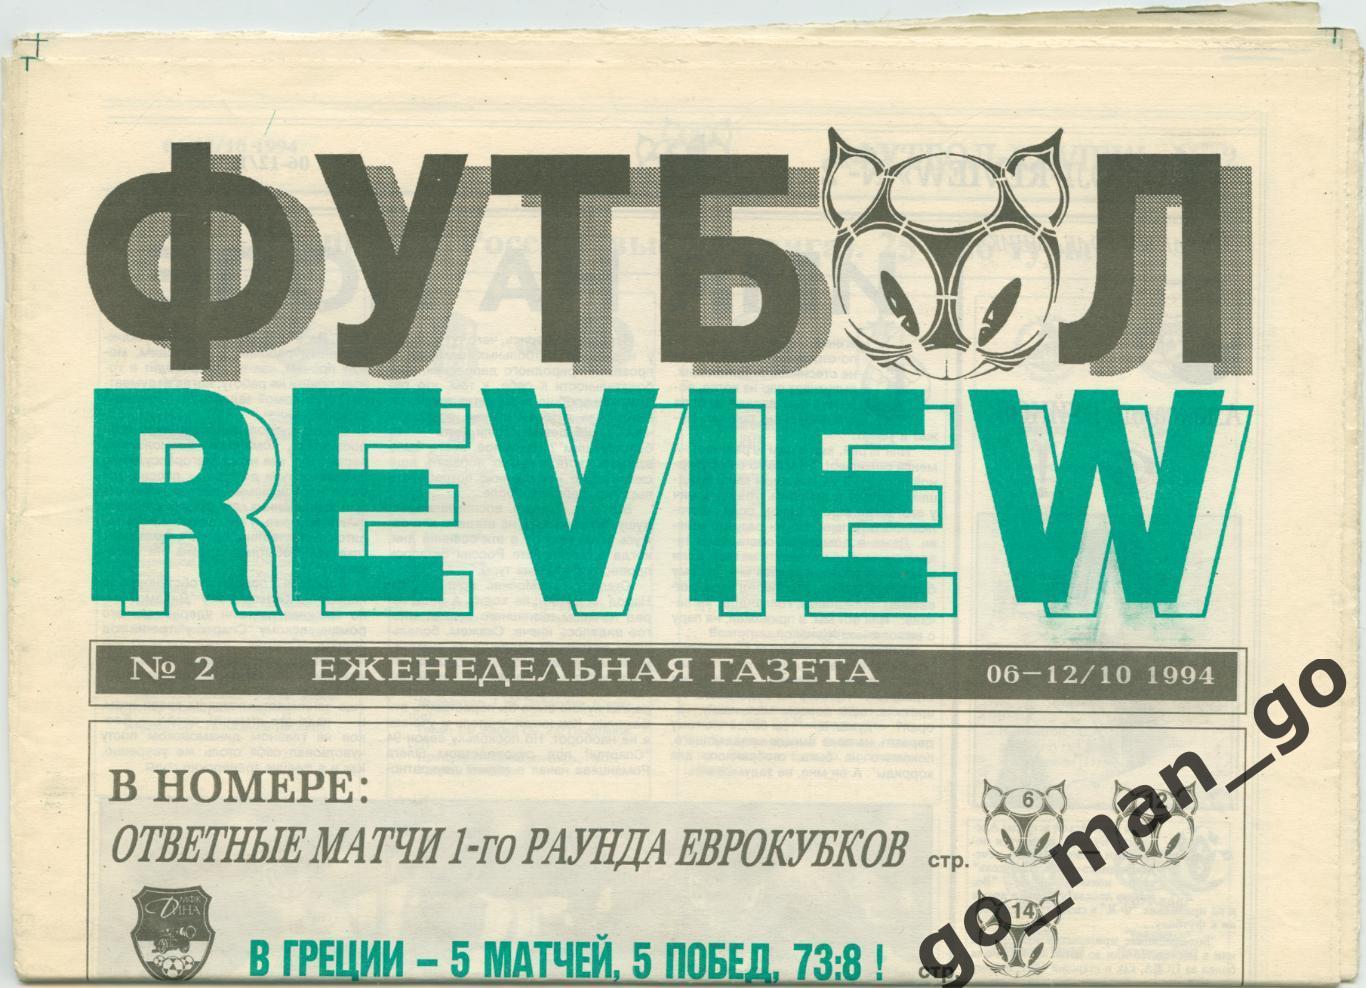 Еженедельник Футбол-Review (Футбол-Ревю), 06-12.10.1994, № 2.